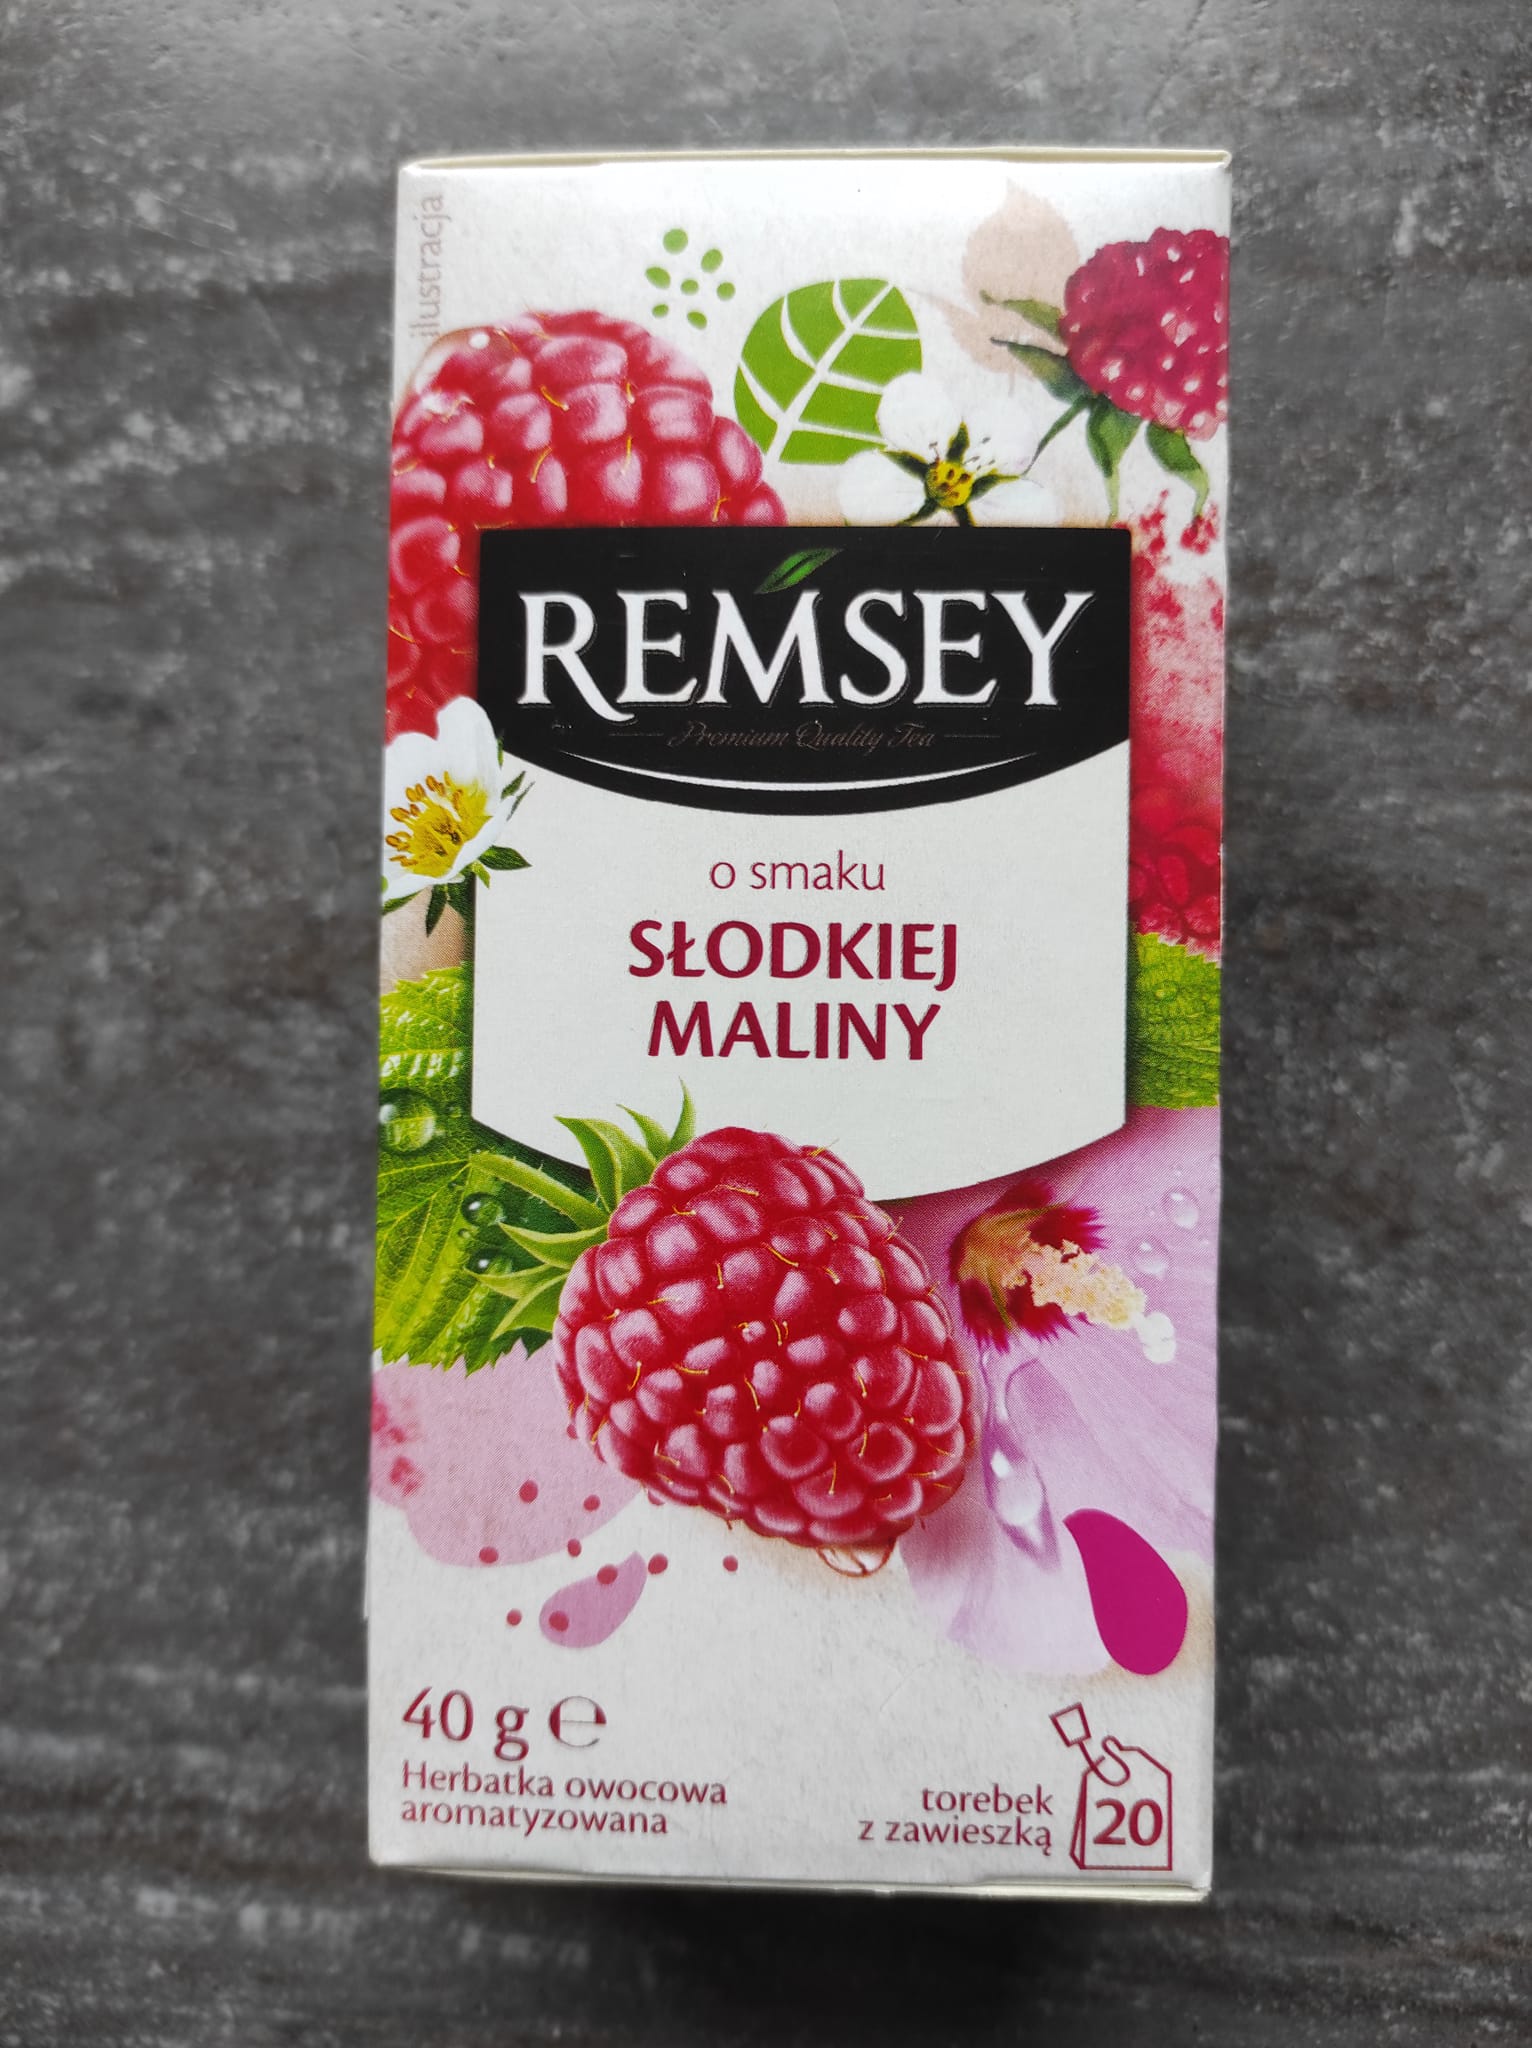 Herbatka o smaku słodkiej maliny – Remsey 5 (1)